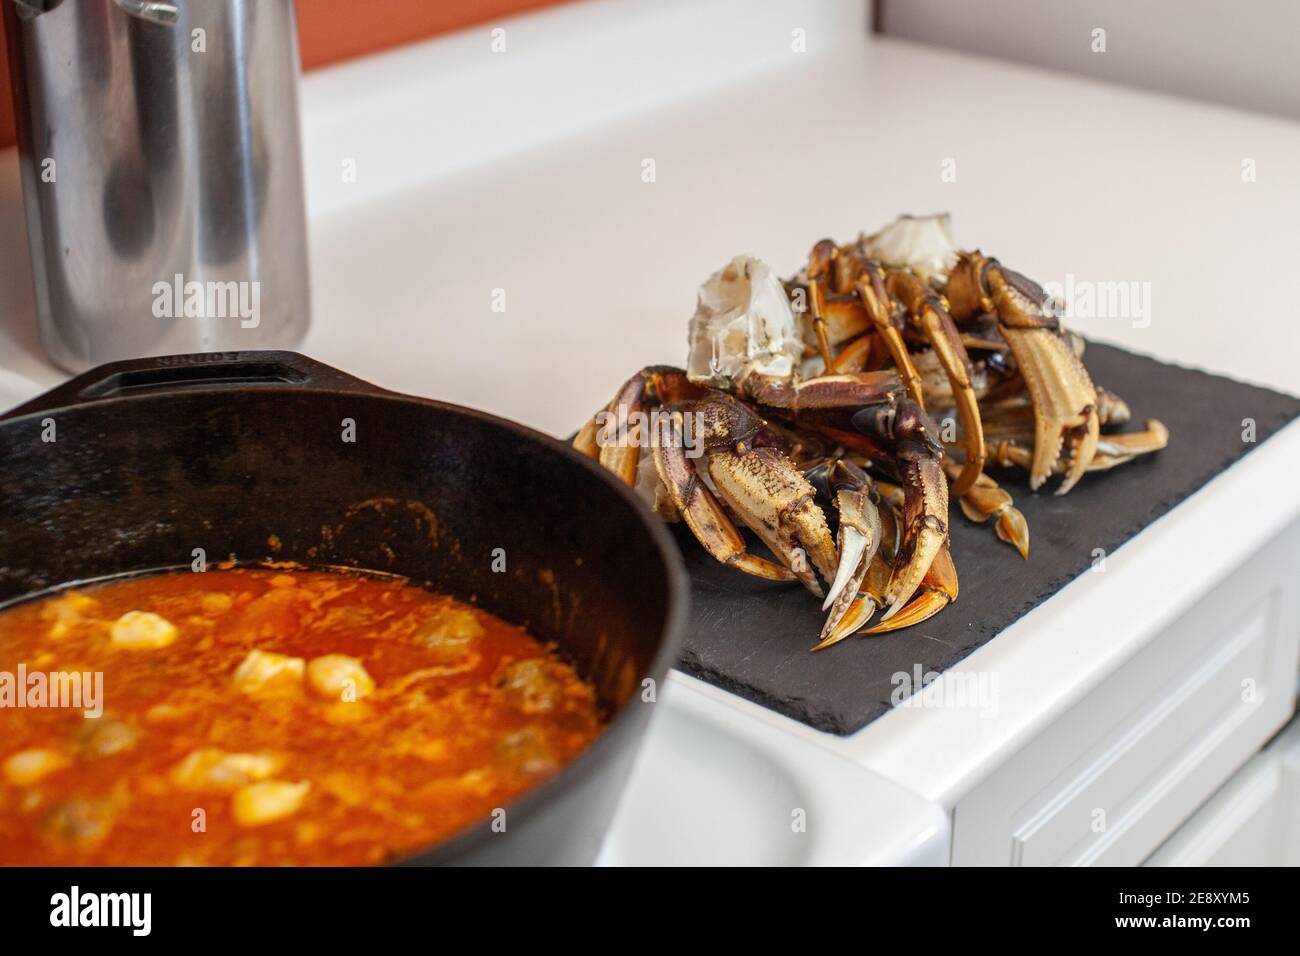 Les pattes de crabe Dungeness sont préparées et prêtes à être placées dans une grande casserole en fonte pour préparer une soupe de fruits de mer pour le dîner Banque D'Images